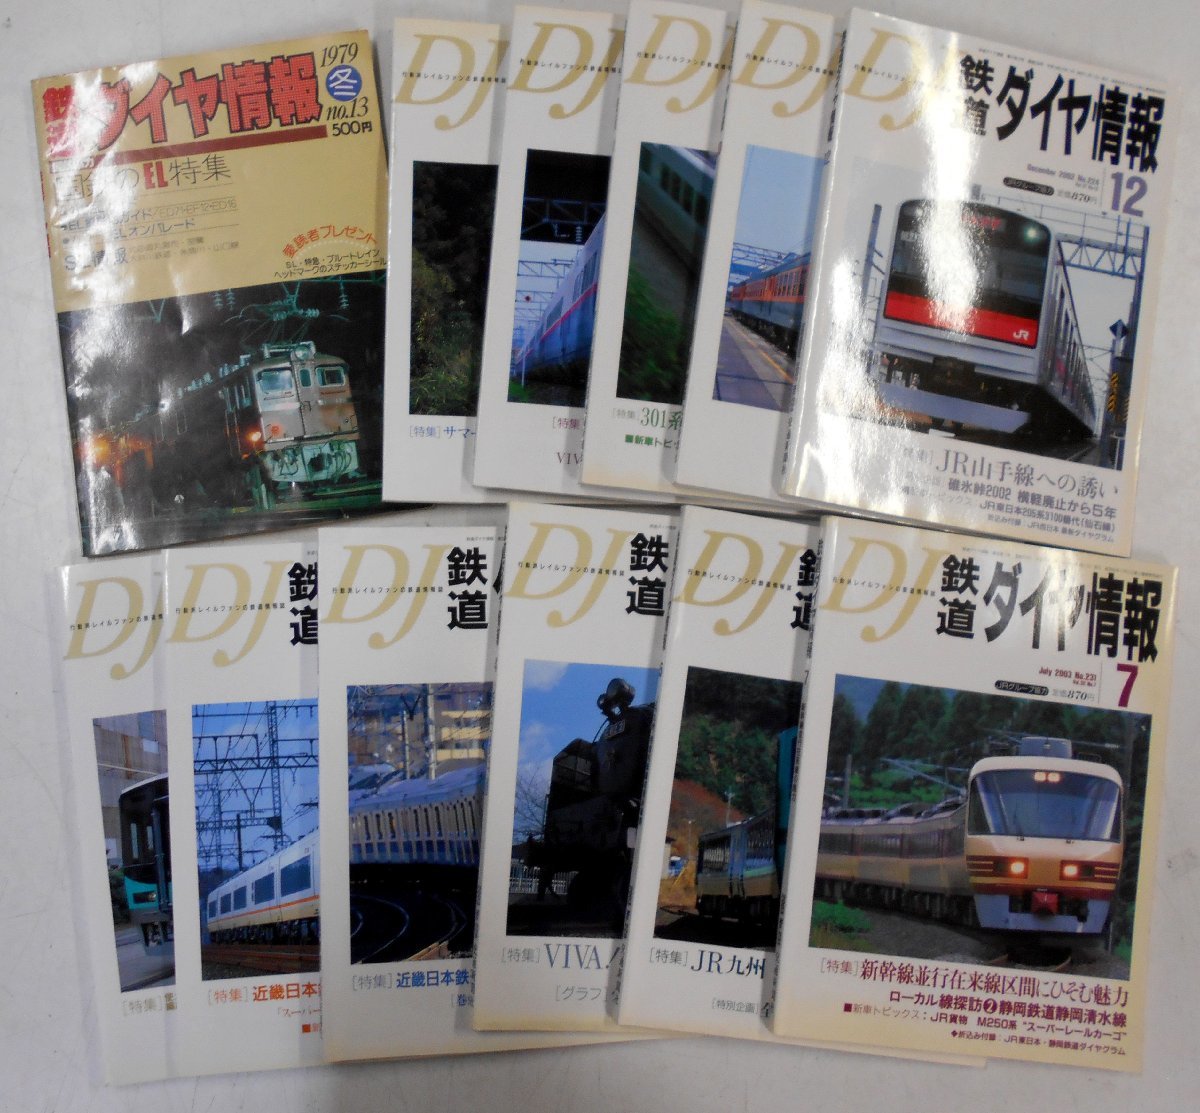  транспорт газета фирма . Tetsudo Daiya Joho 1979/2002~2018 год не комплект 26 шт. совместно [ka189]